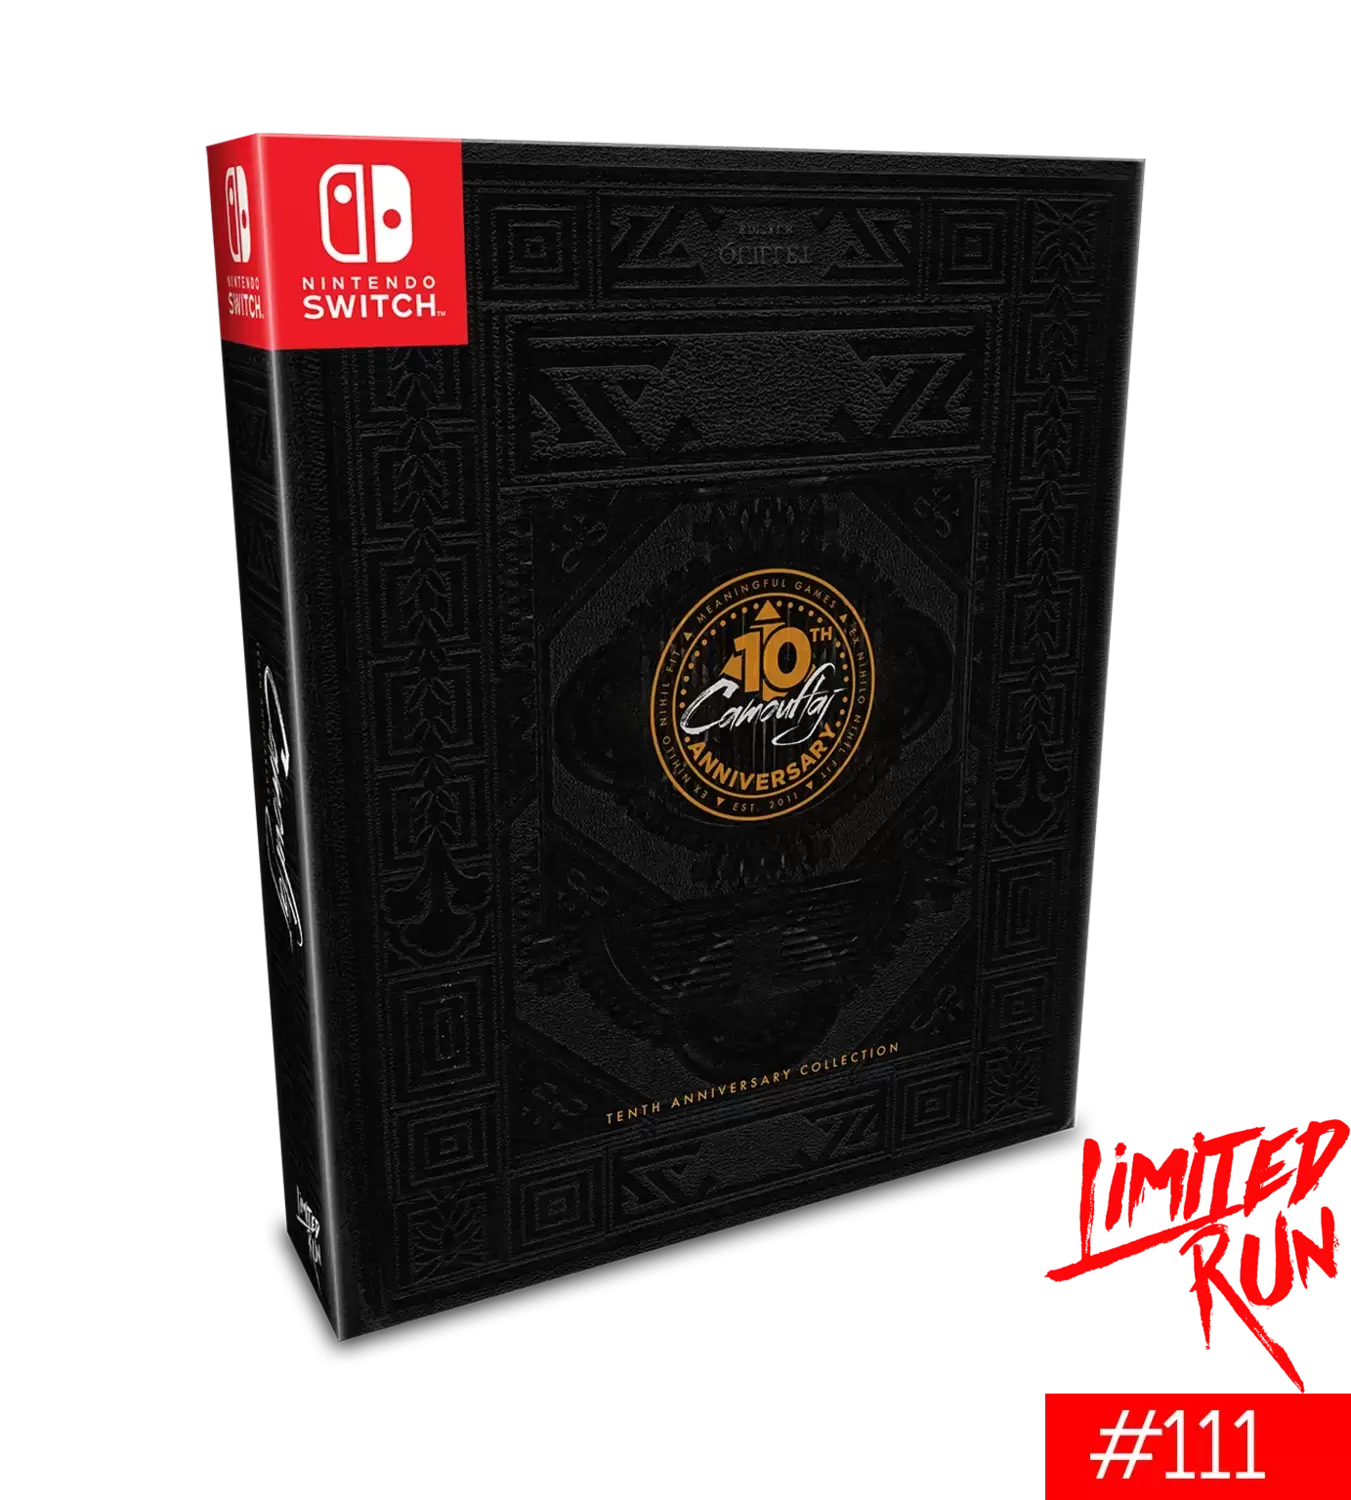 Jeux Nintendo Switch - République: Anniversary Edition